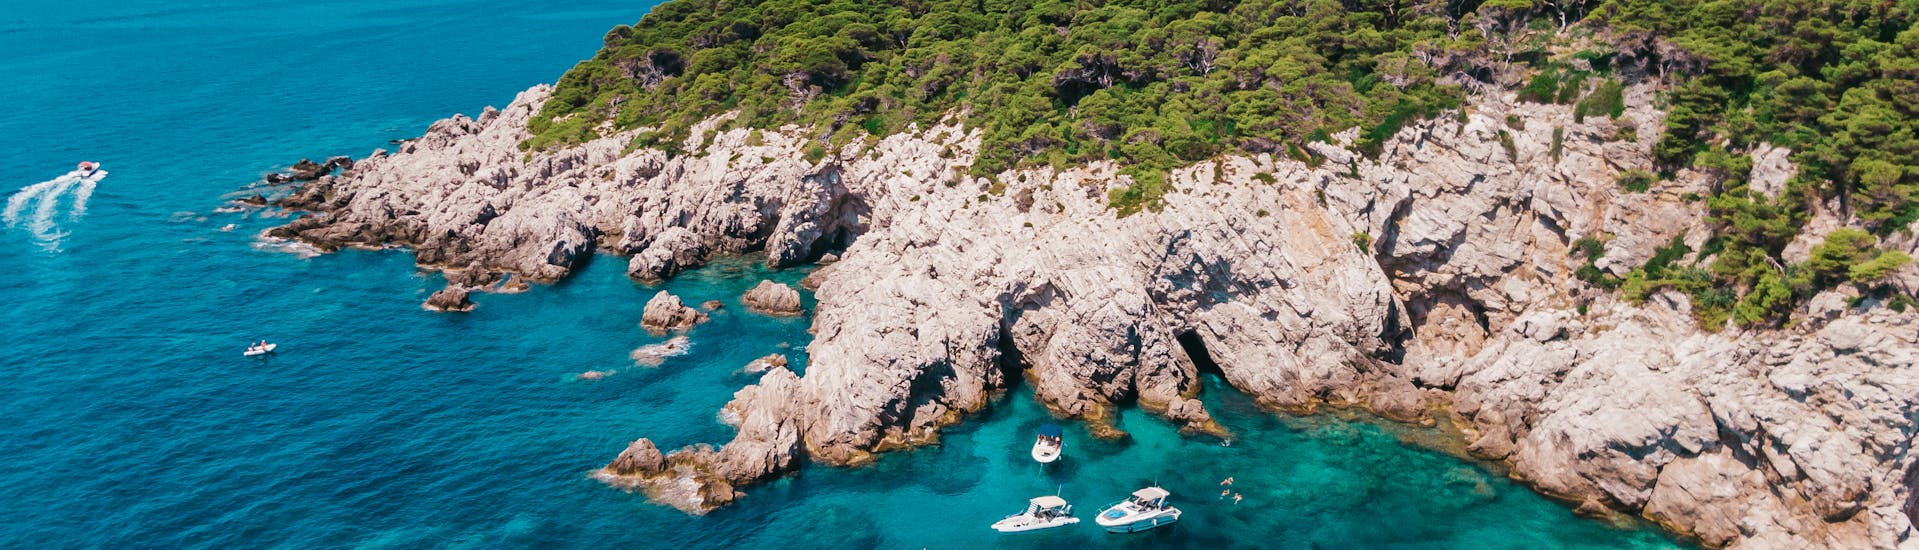 Gita privata in barca da Dubrovnik a Isole Elafiti con bagno in mare e osservazione della fauna selvatica.